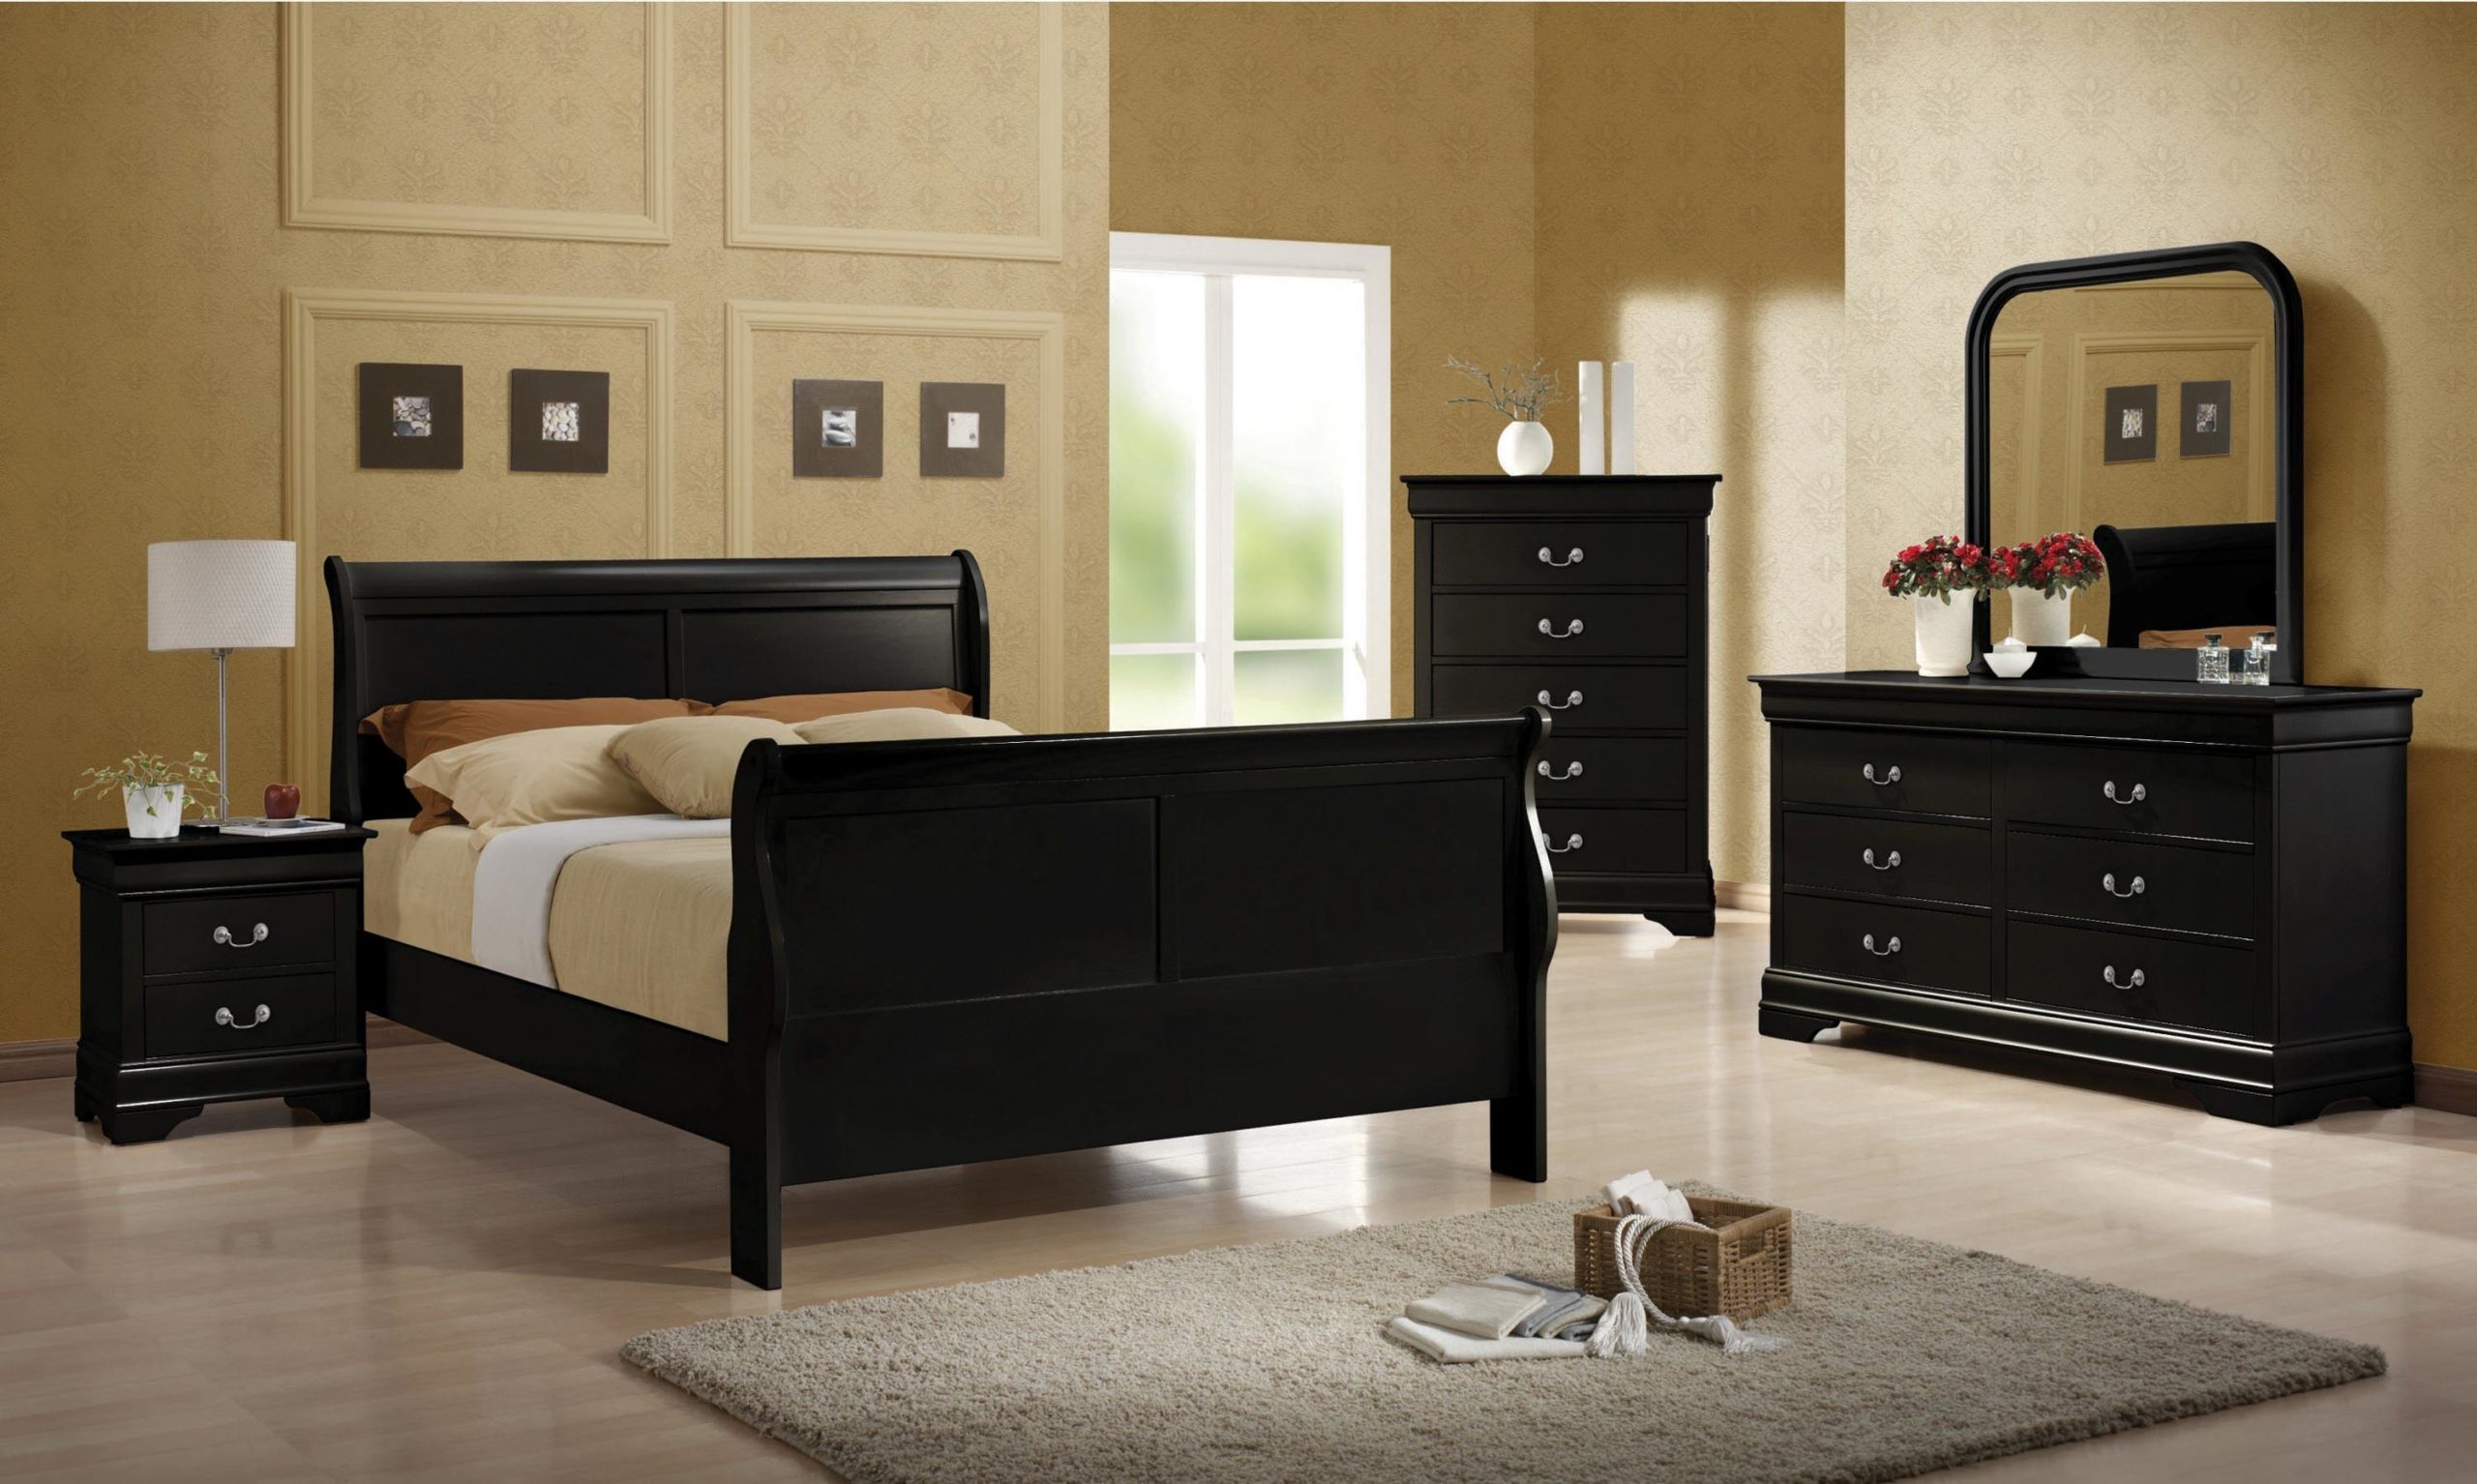 The Louis Philippe Queen 5 Piece Set (Bed, Nightstand, Dresser